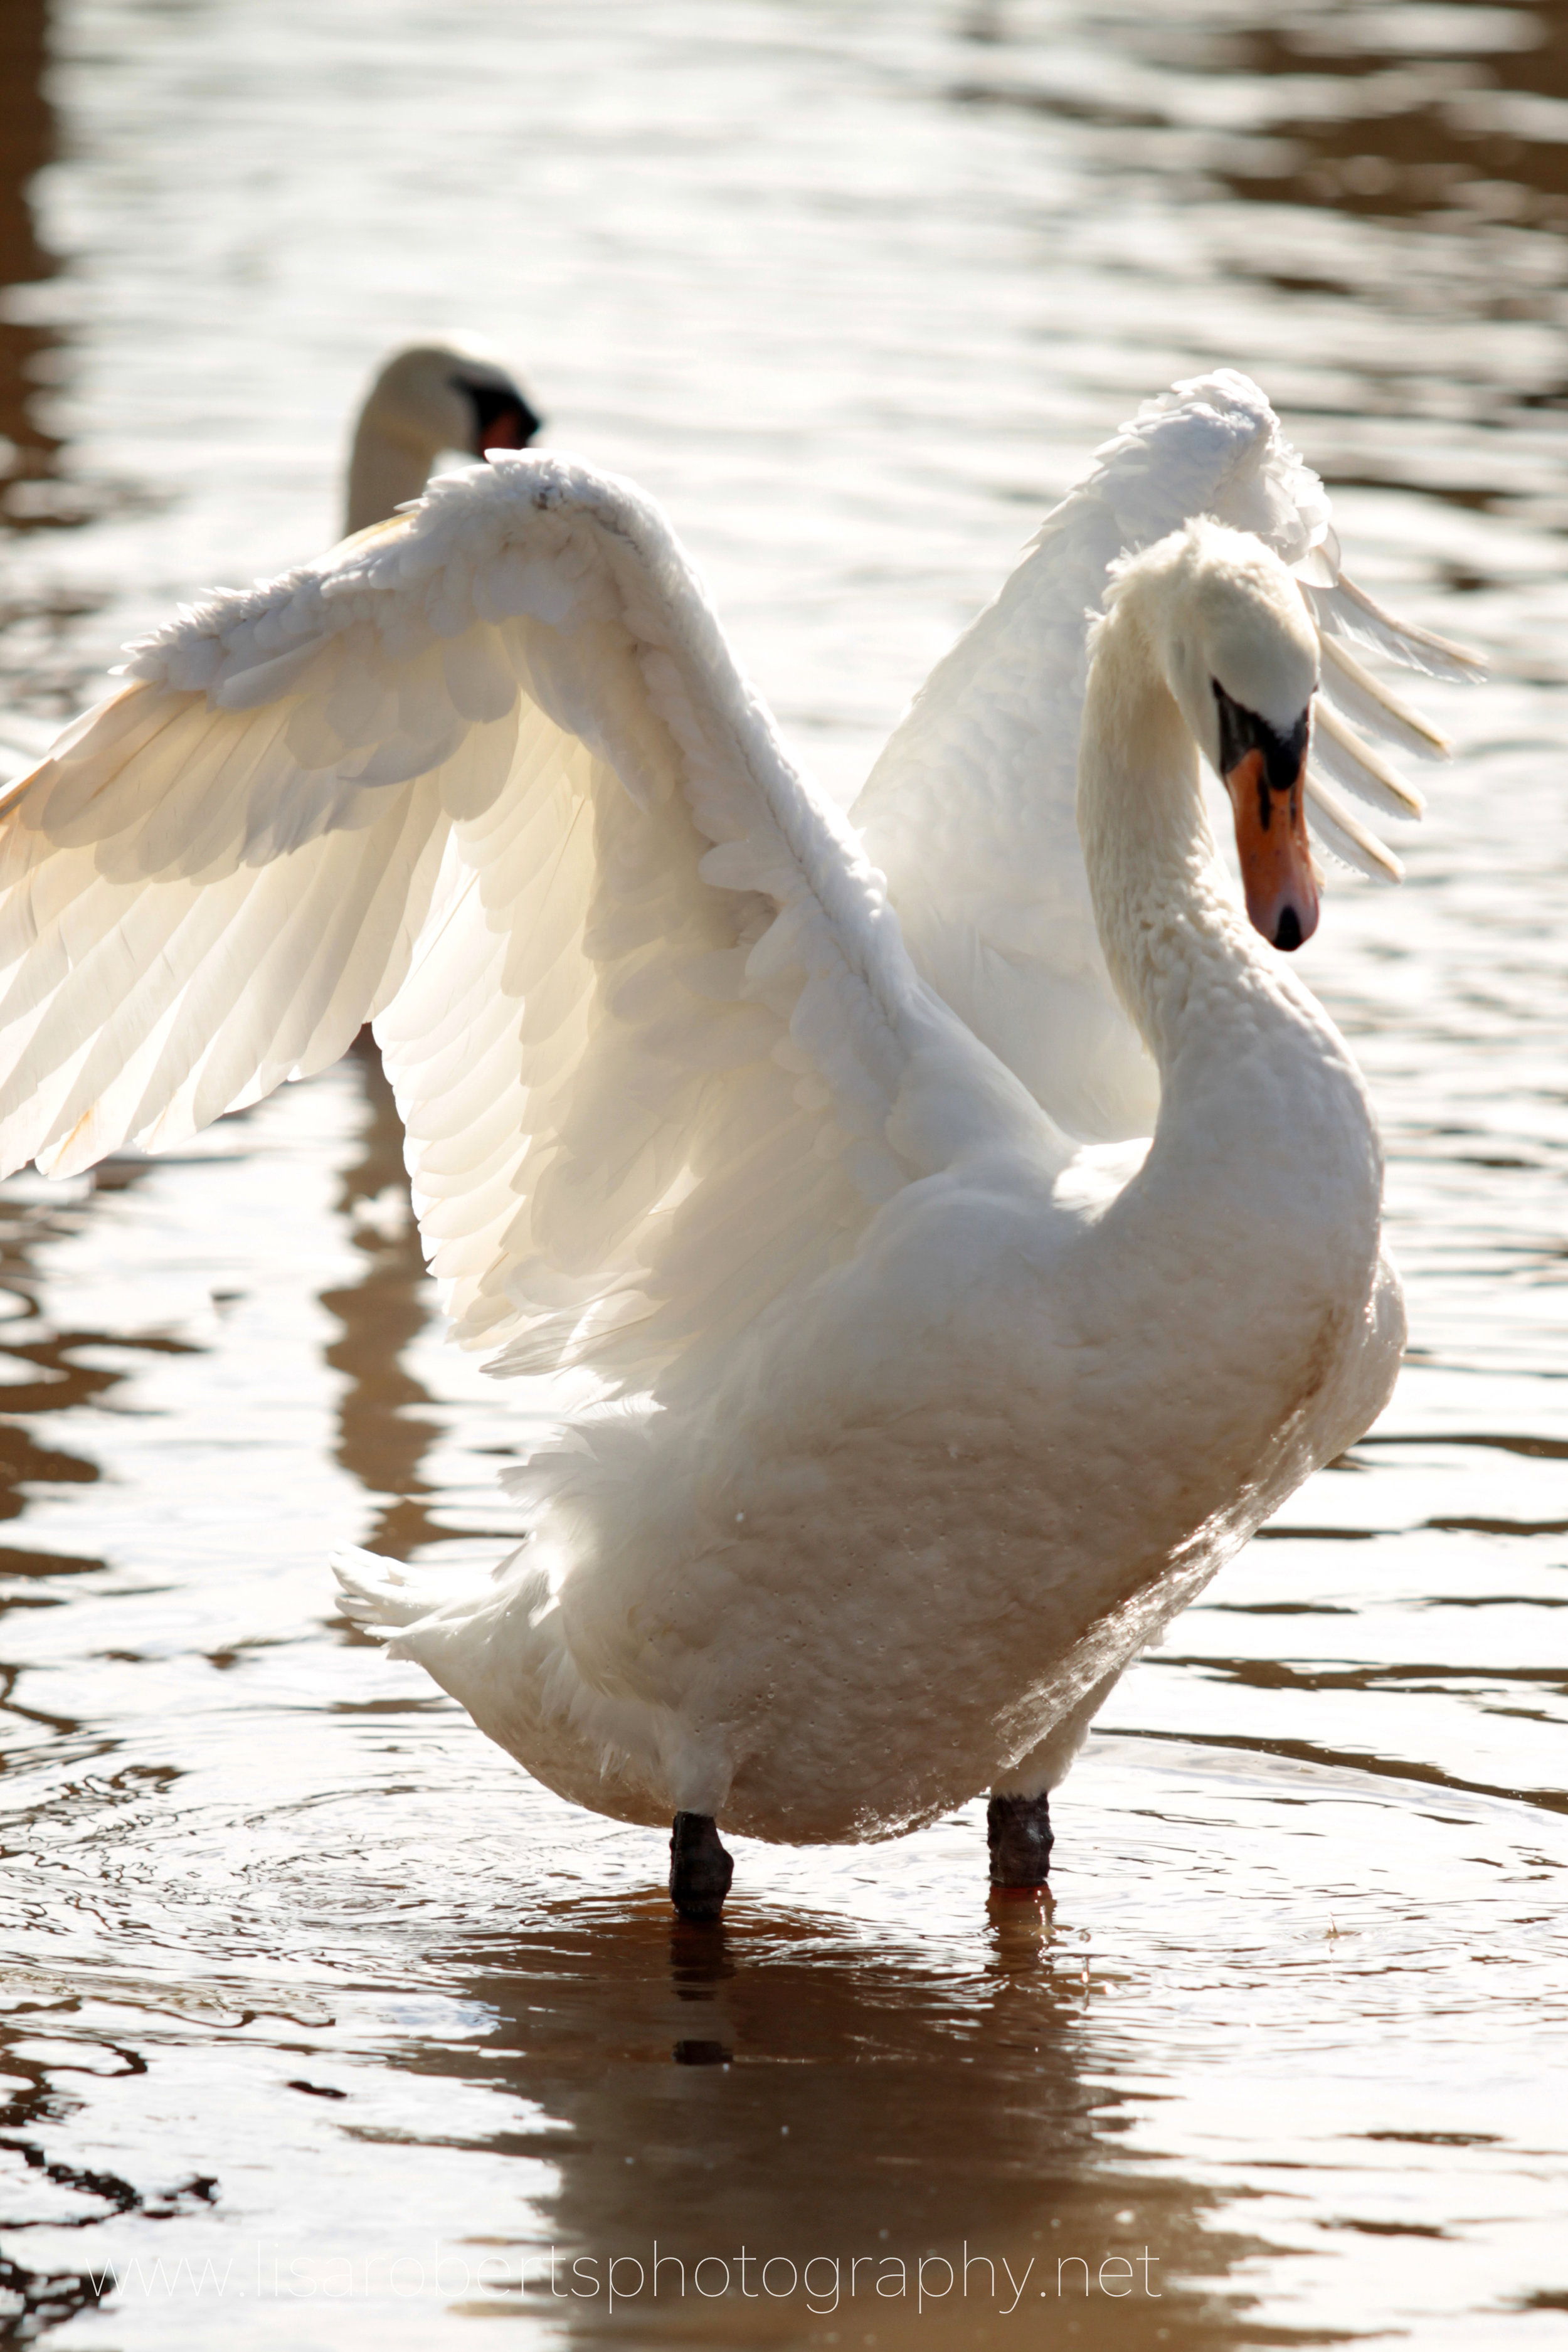  Swan shaking wings 